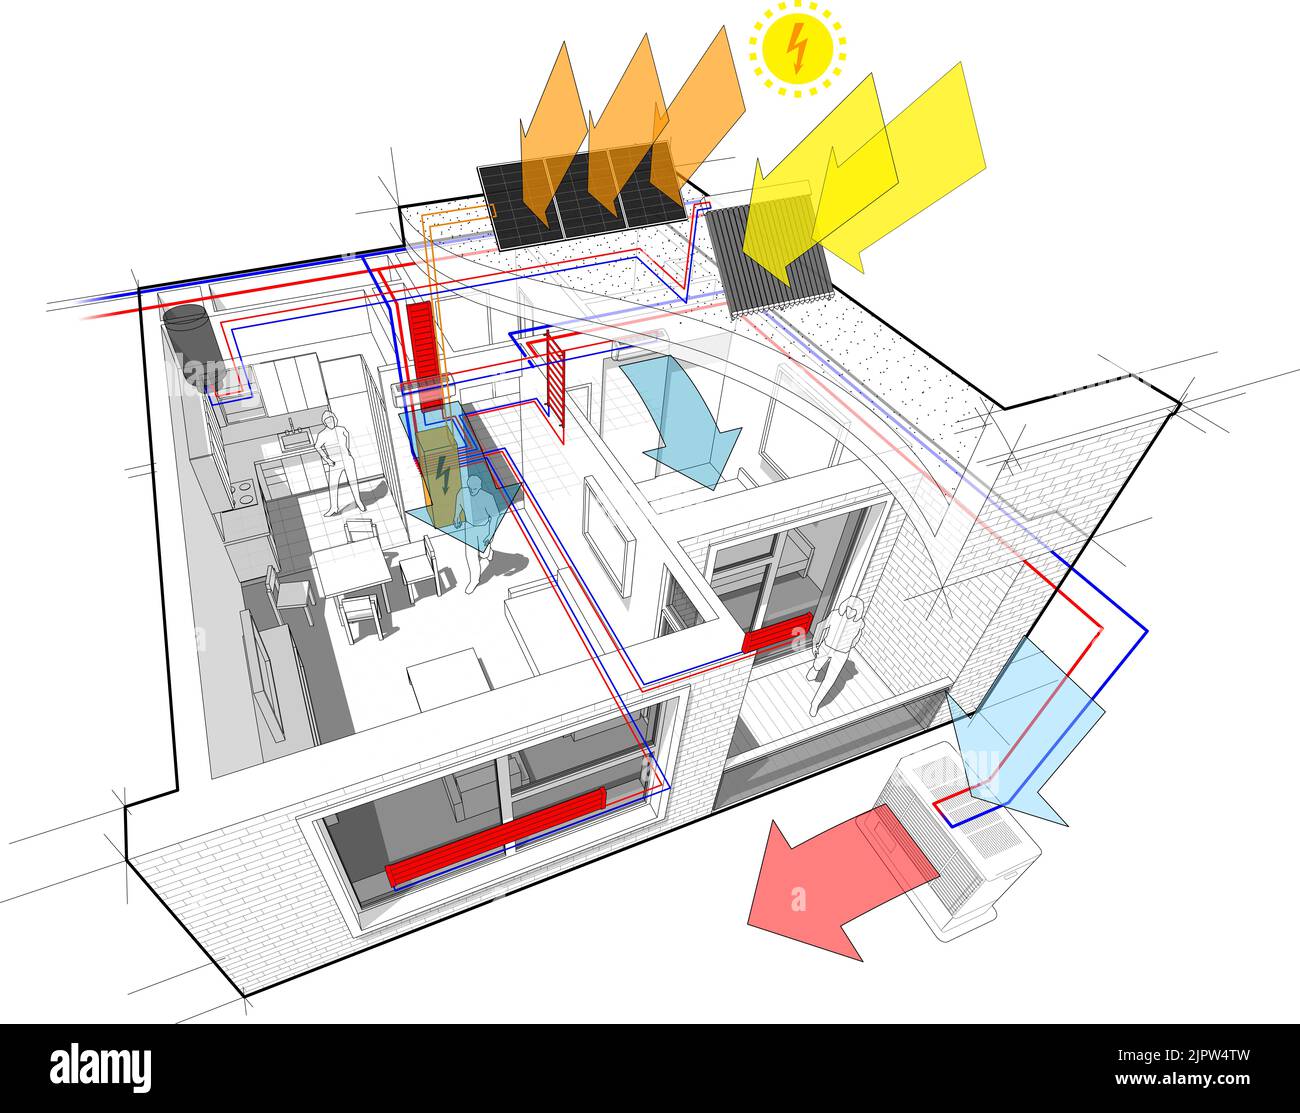 Wohnung mit Heizkörpern und Photovoltaik und Solarzellen und Klimaanlage Stockfoto